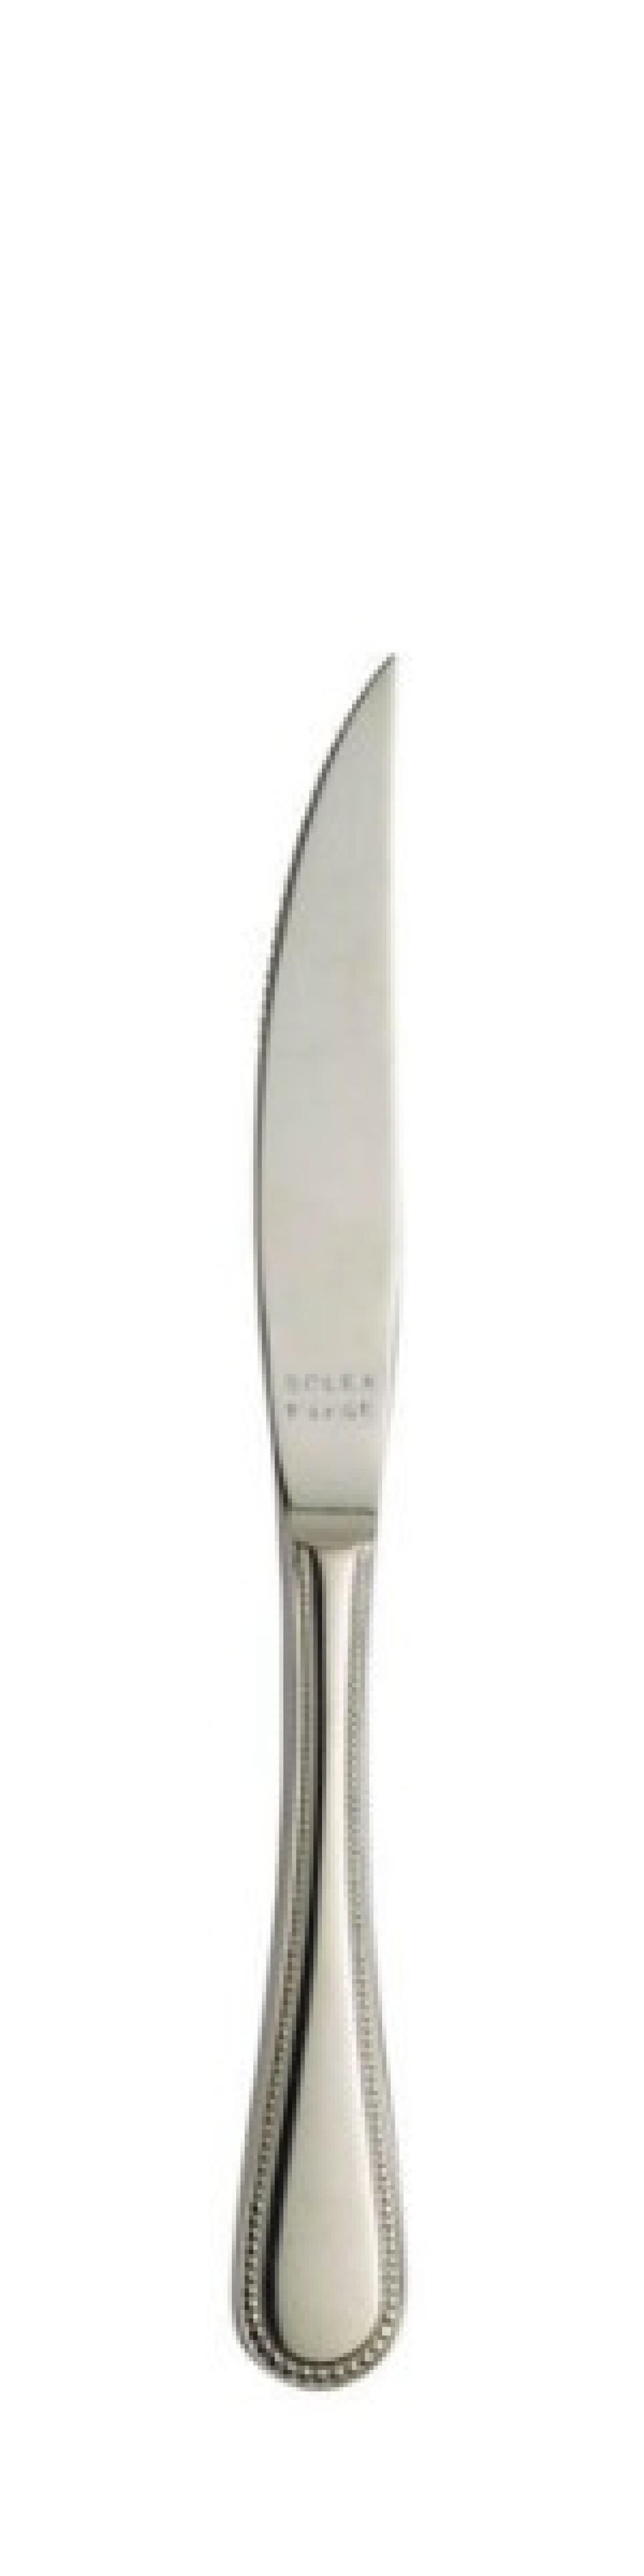 Perle Kødkniv med hult skaft 189 mm - Solex i gruppen Borddækning / Bestik / Knivar hos The Kitchen Lab (1284-21425)